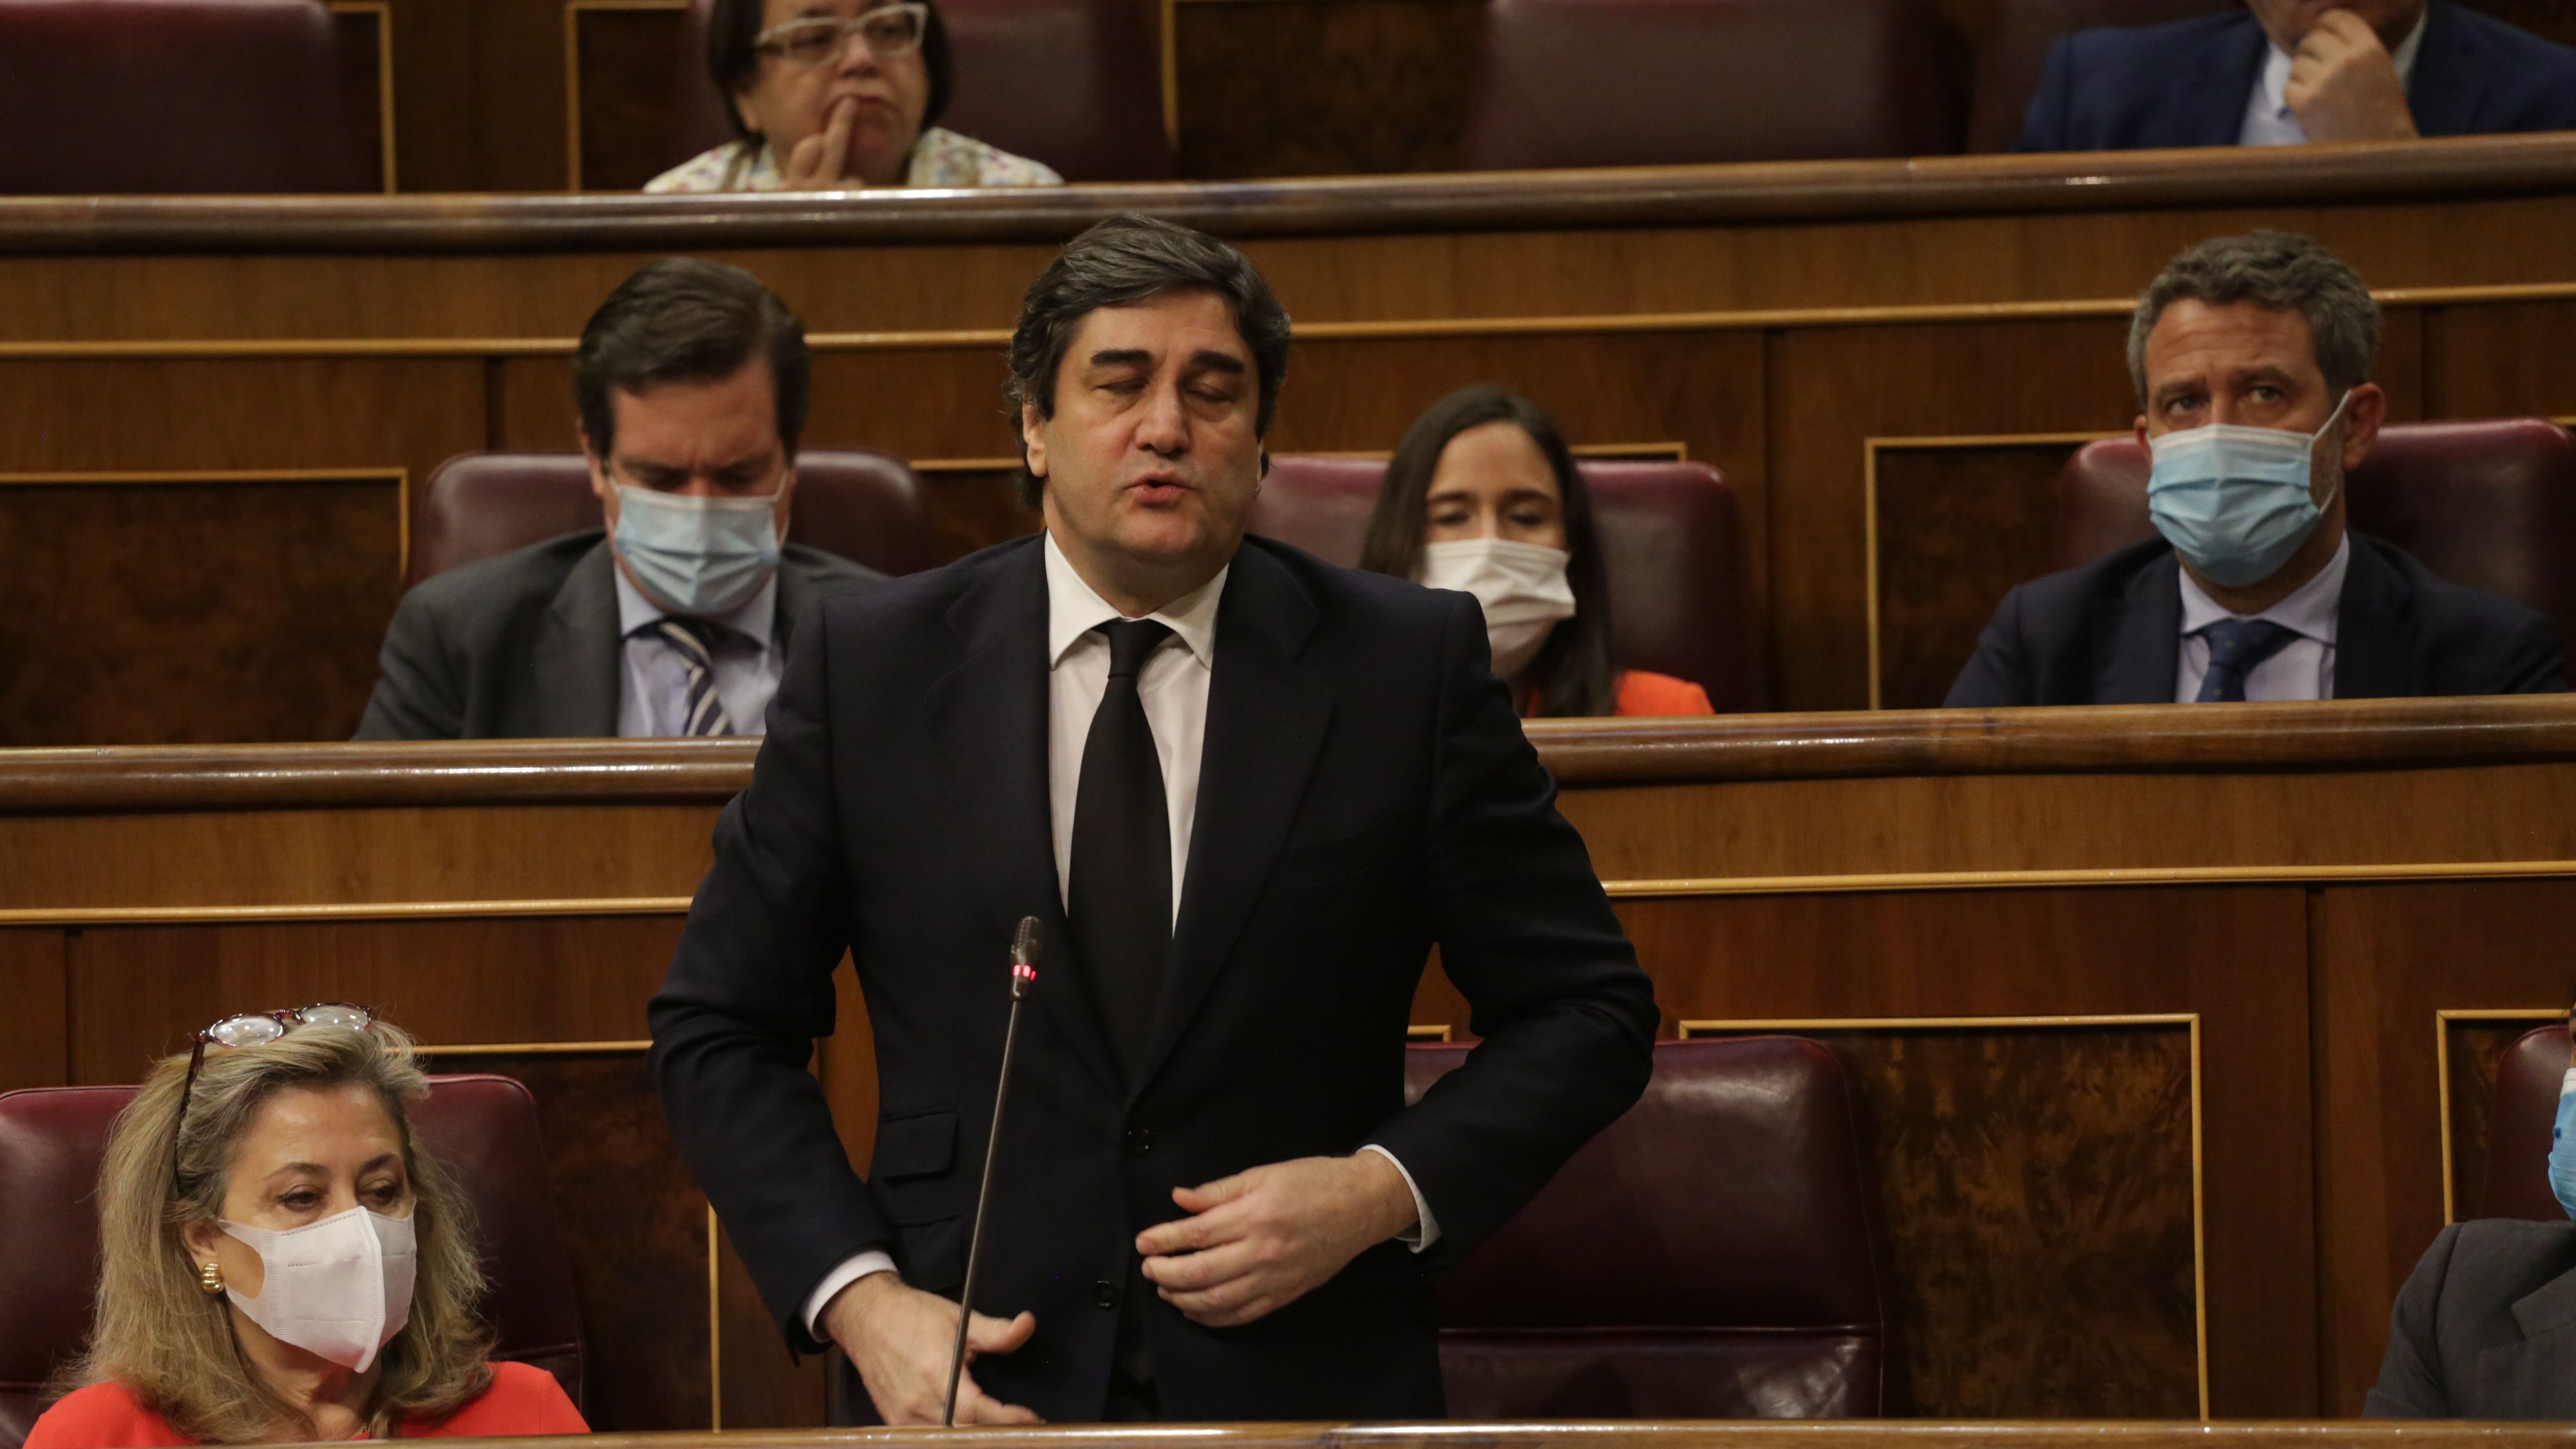 El diputado del PP, José Ignacio Echániz, le dice a Sánchez en el Congreso que "está muerto" y después matiza